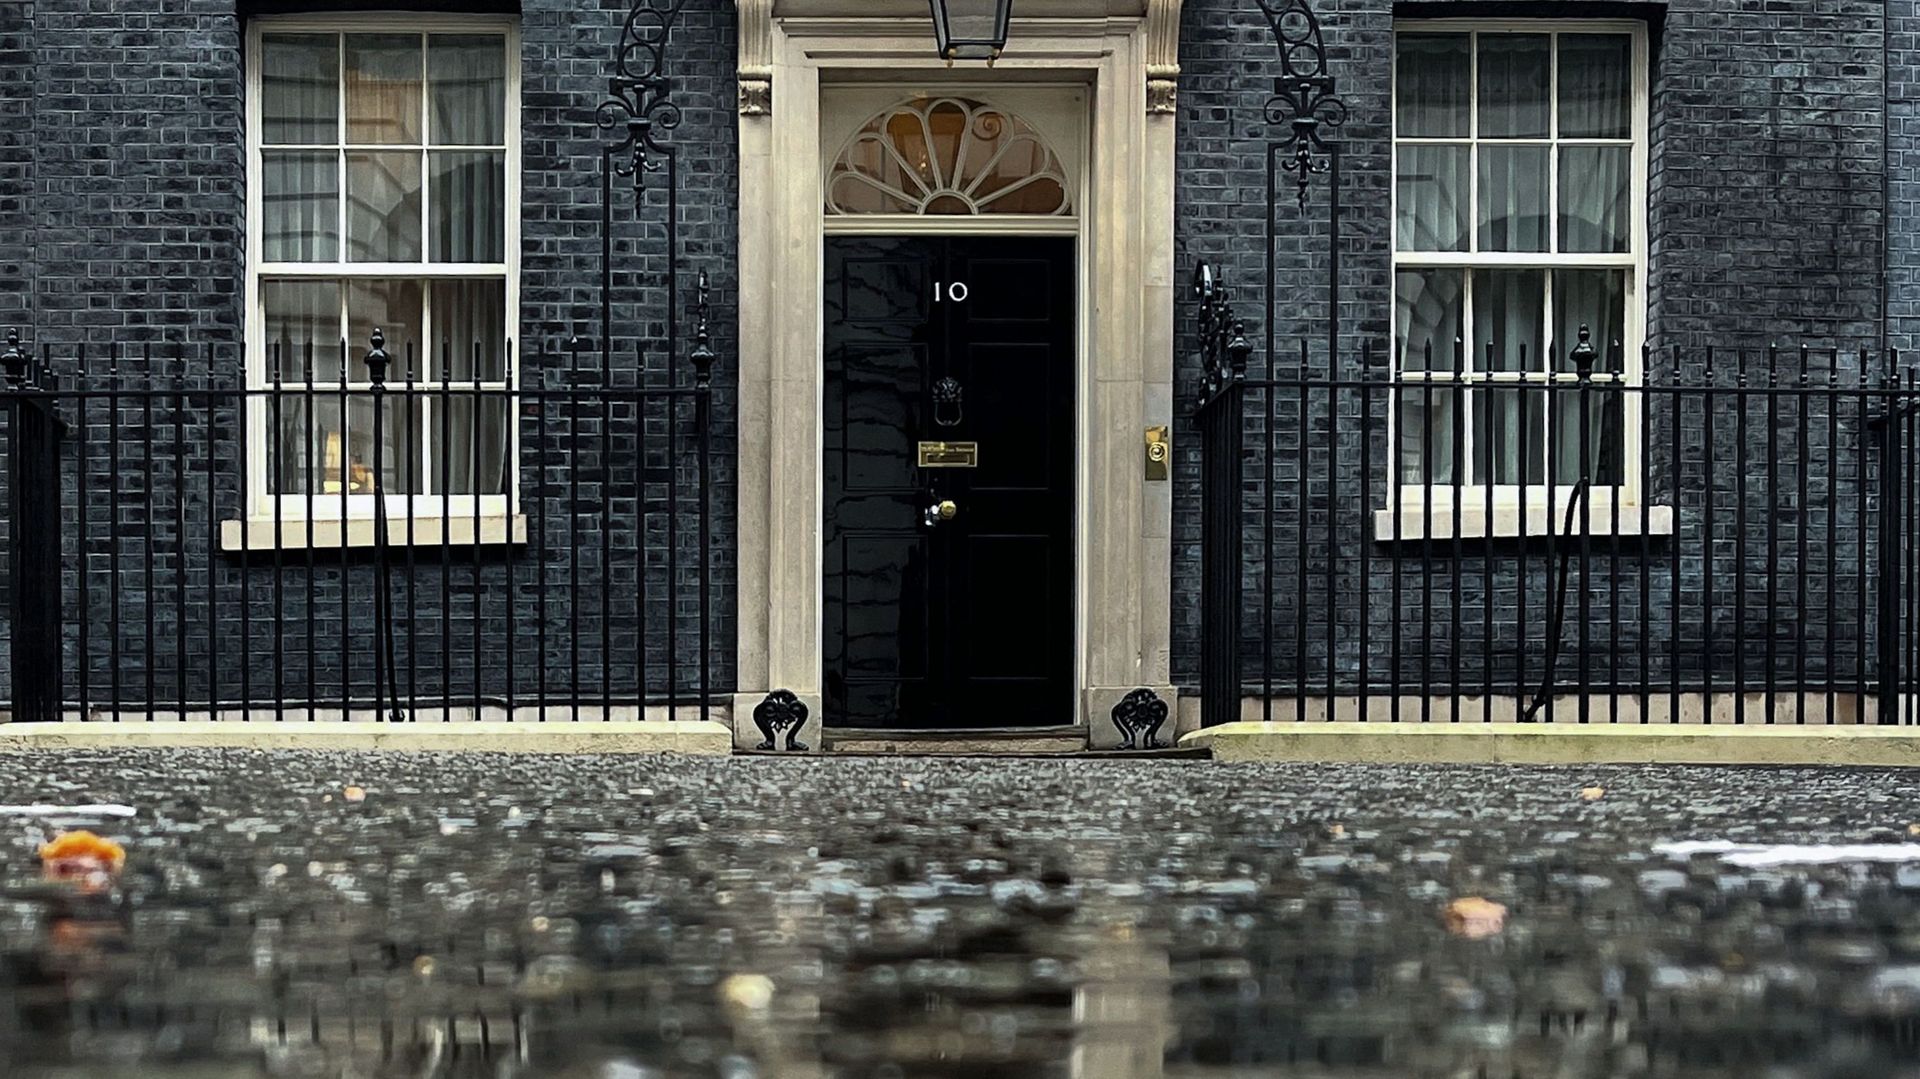 Le Premier ministre Boris Johnson a fait l’objet de critiques au début de l’année après la révélation par la presse de plusieurs fêtes organisées à Downing Street pendant les confinements dus à la pandémie de coronavirus.